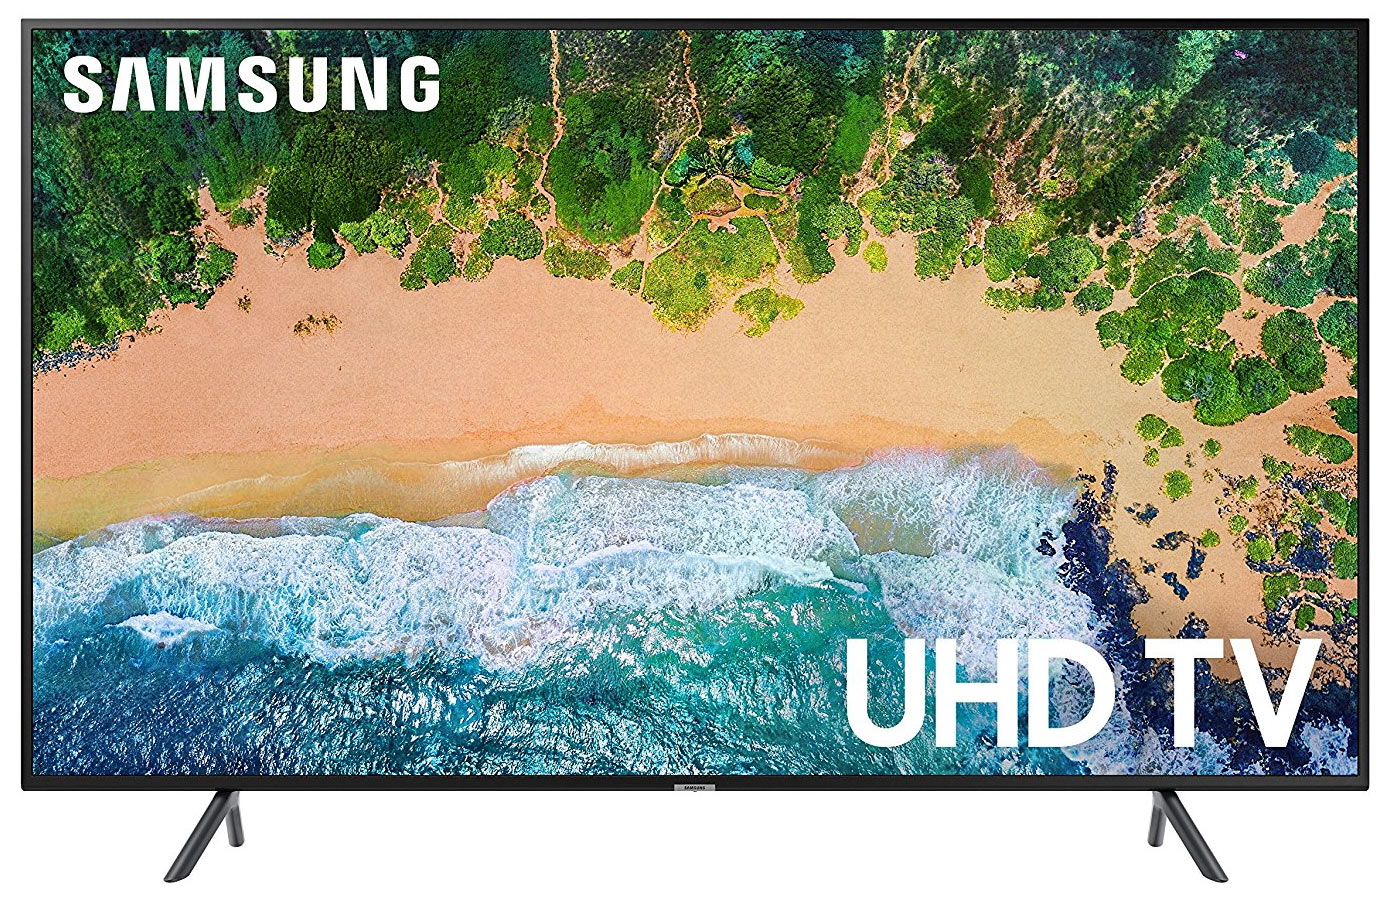 Samsung 2018 TV line-up - full overview FlatpanelsHD